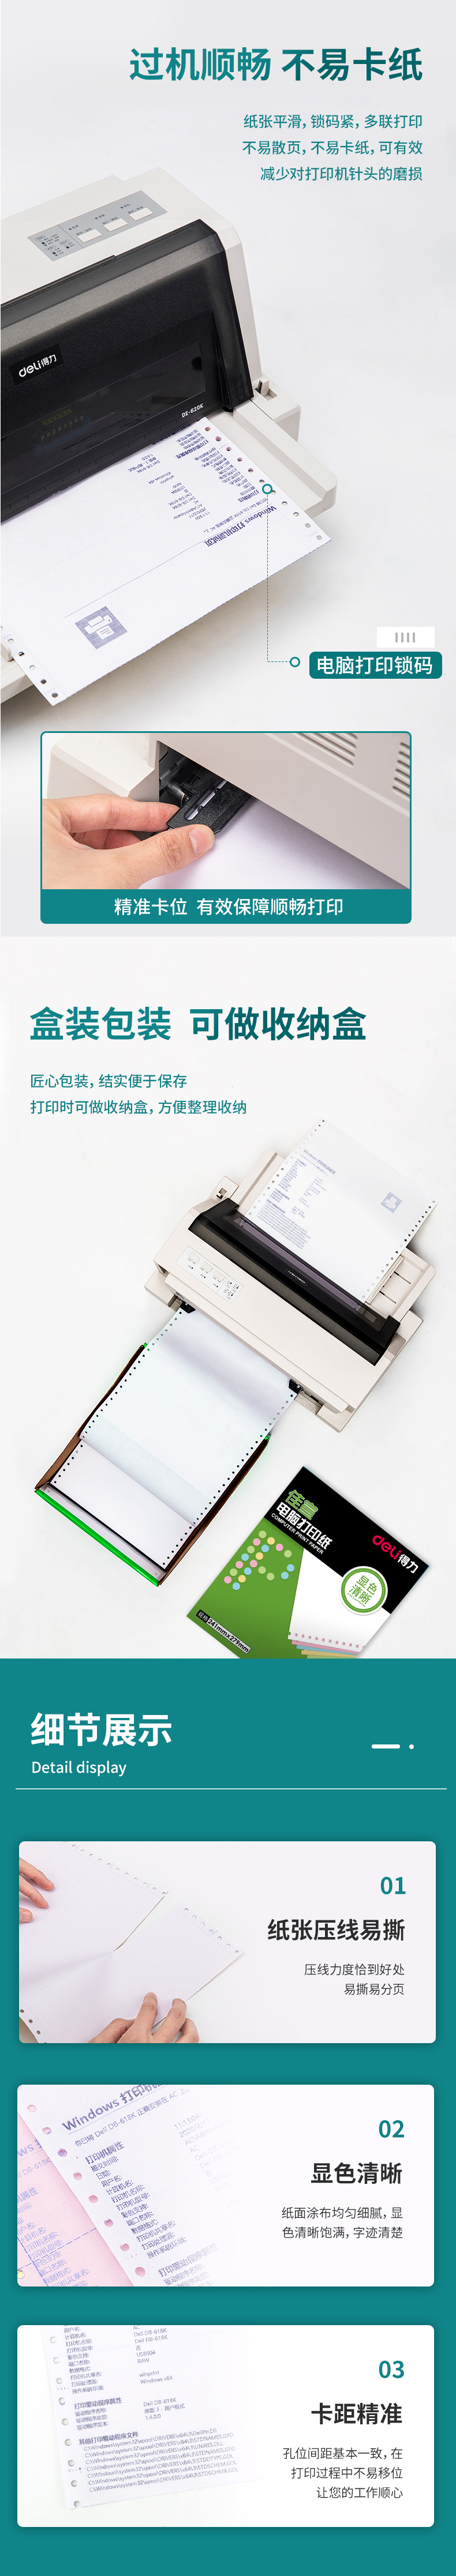 得力佳宣J241-3电脑打印纸(13CS彩色撕边)(盒)_03.jpg